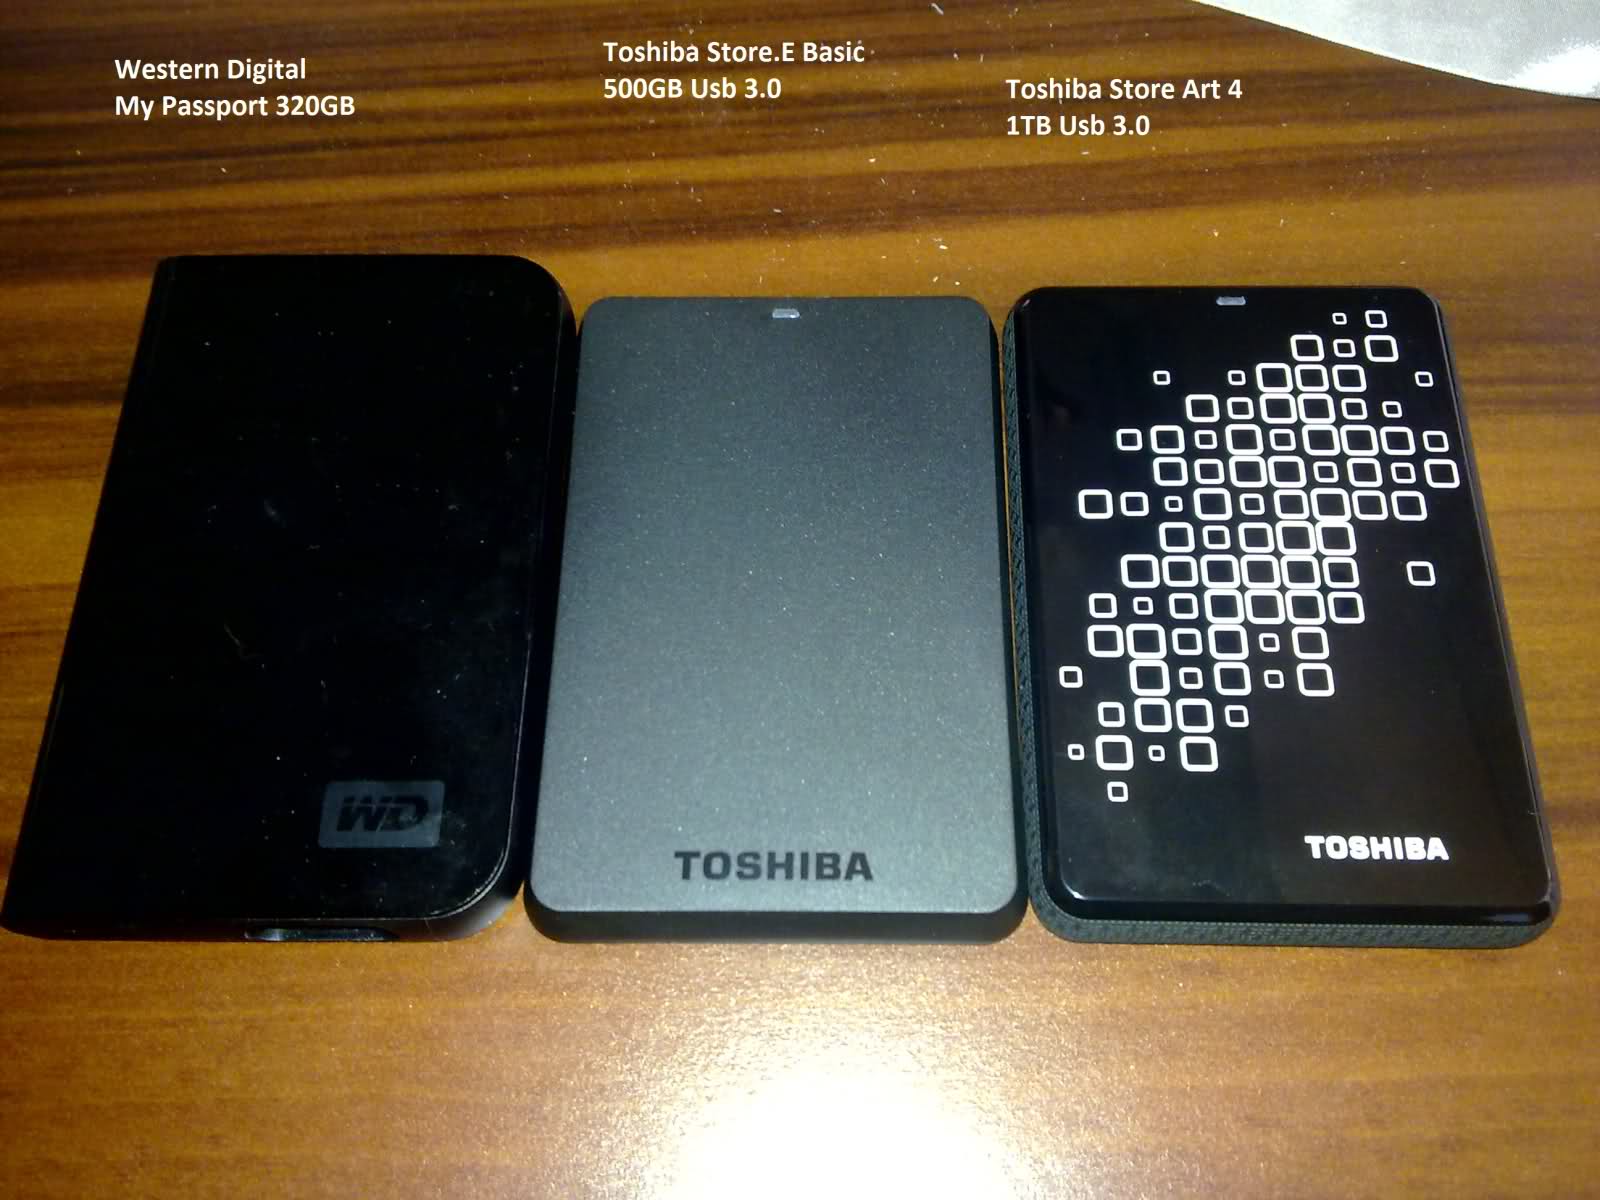  TOSHIBA Stor.E Art 4 1TB 2.5'' USB 3.0 İnceleme (Usb 3.0 Testi Eklendi )